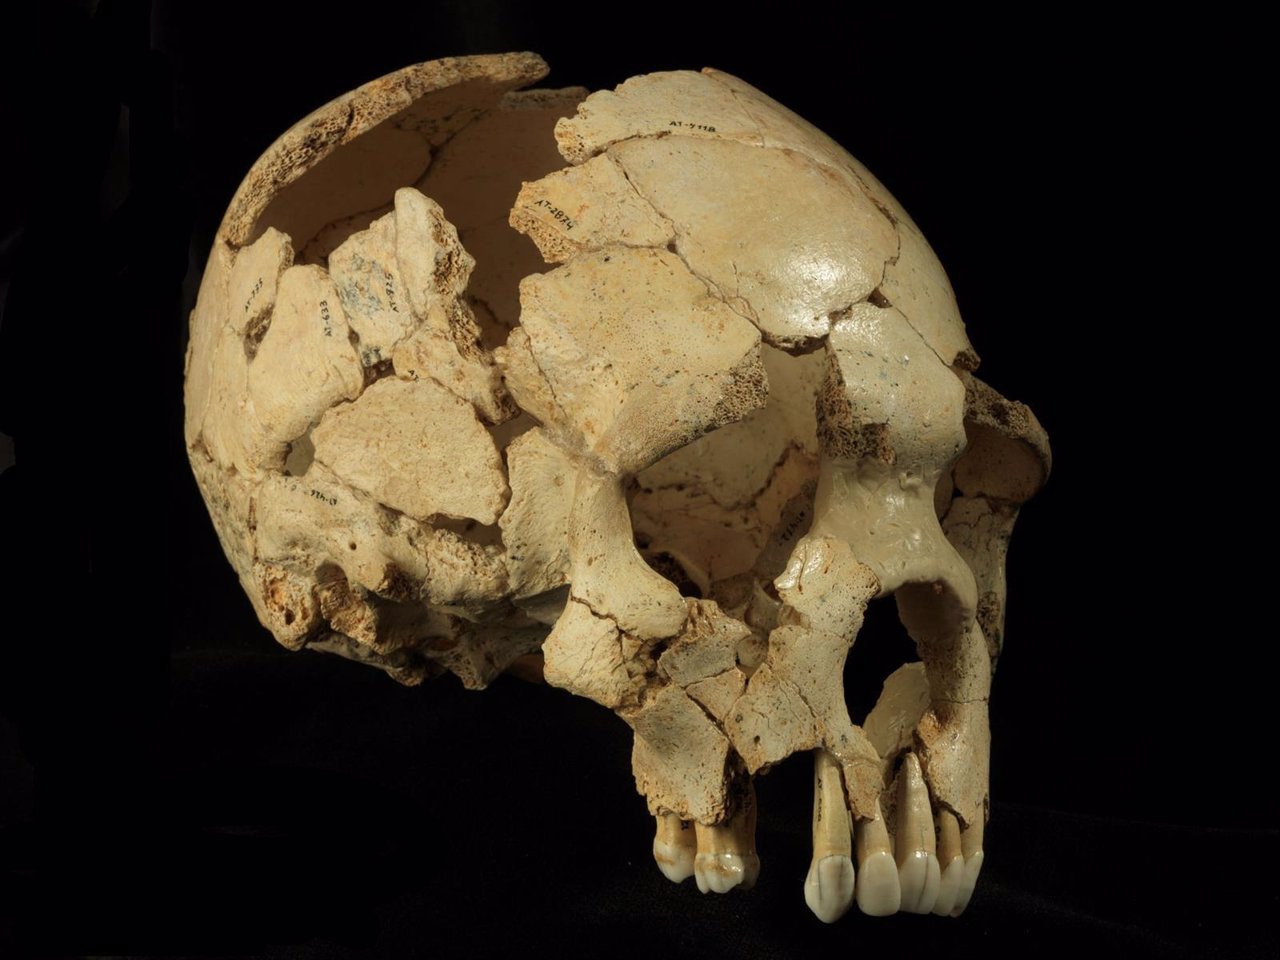  El Cráneo 6 De La Sima De Los Huesos (Atapuerca, Burgos)